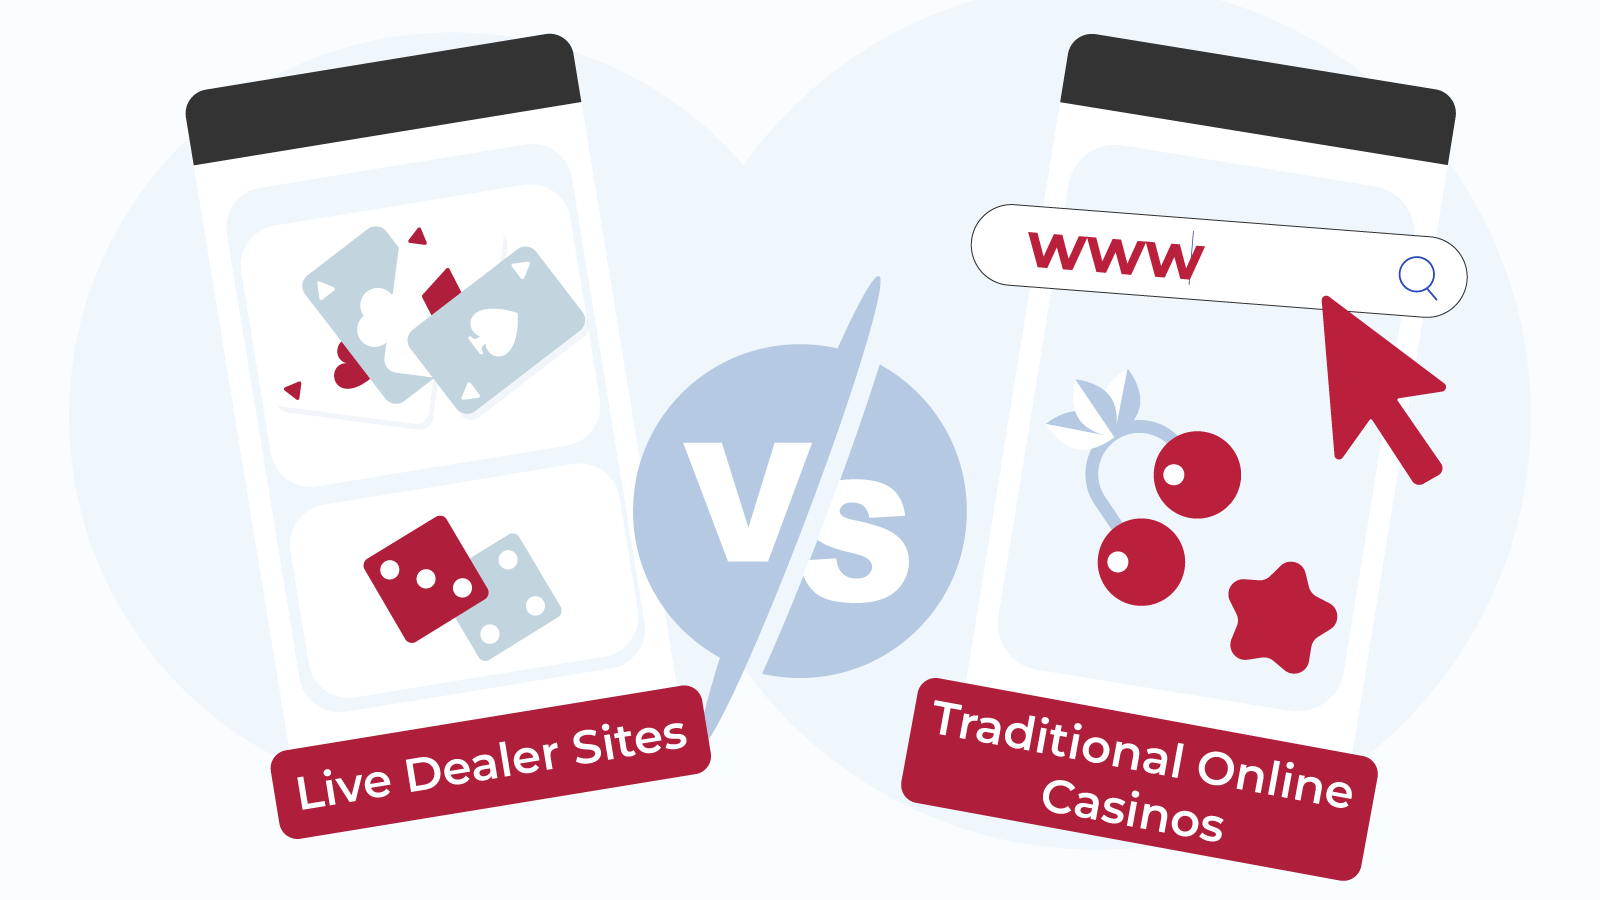 Live-Dealer-Sites-Vs.-Traditional-Online-Casinos